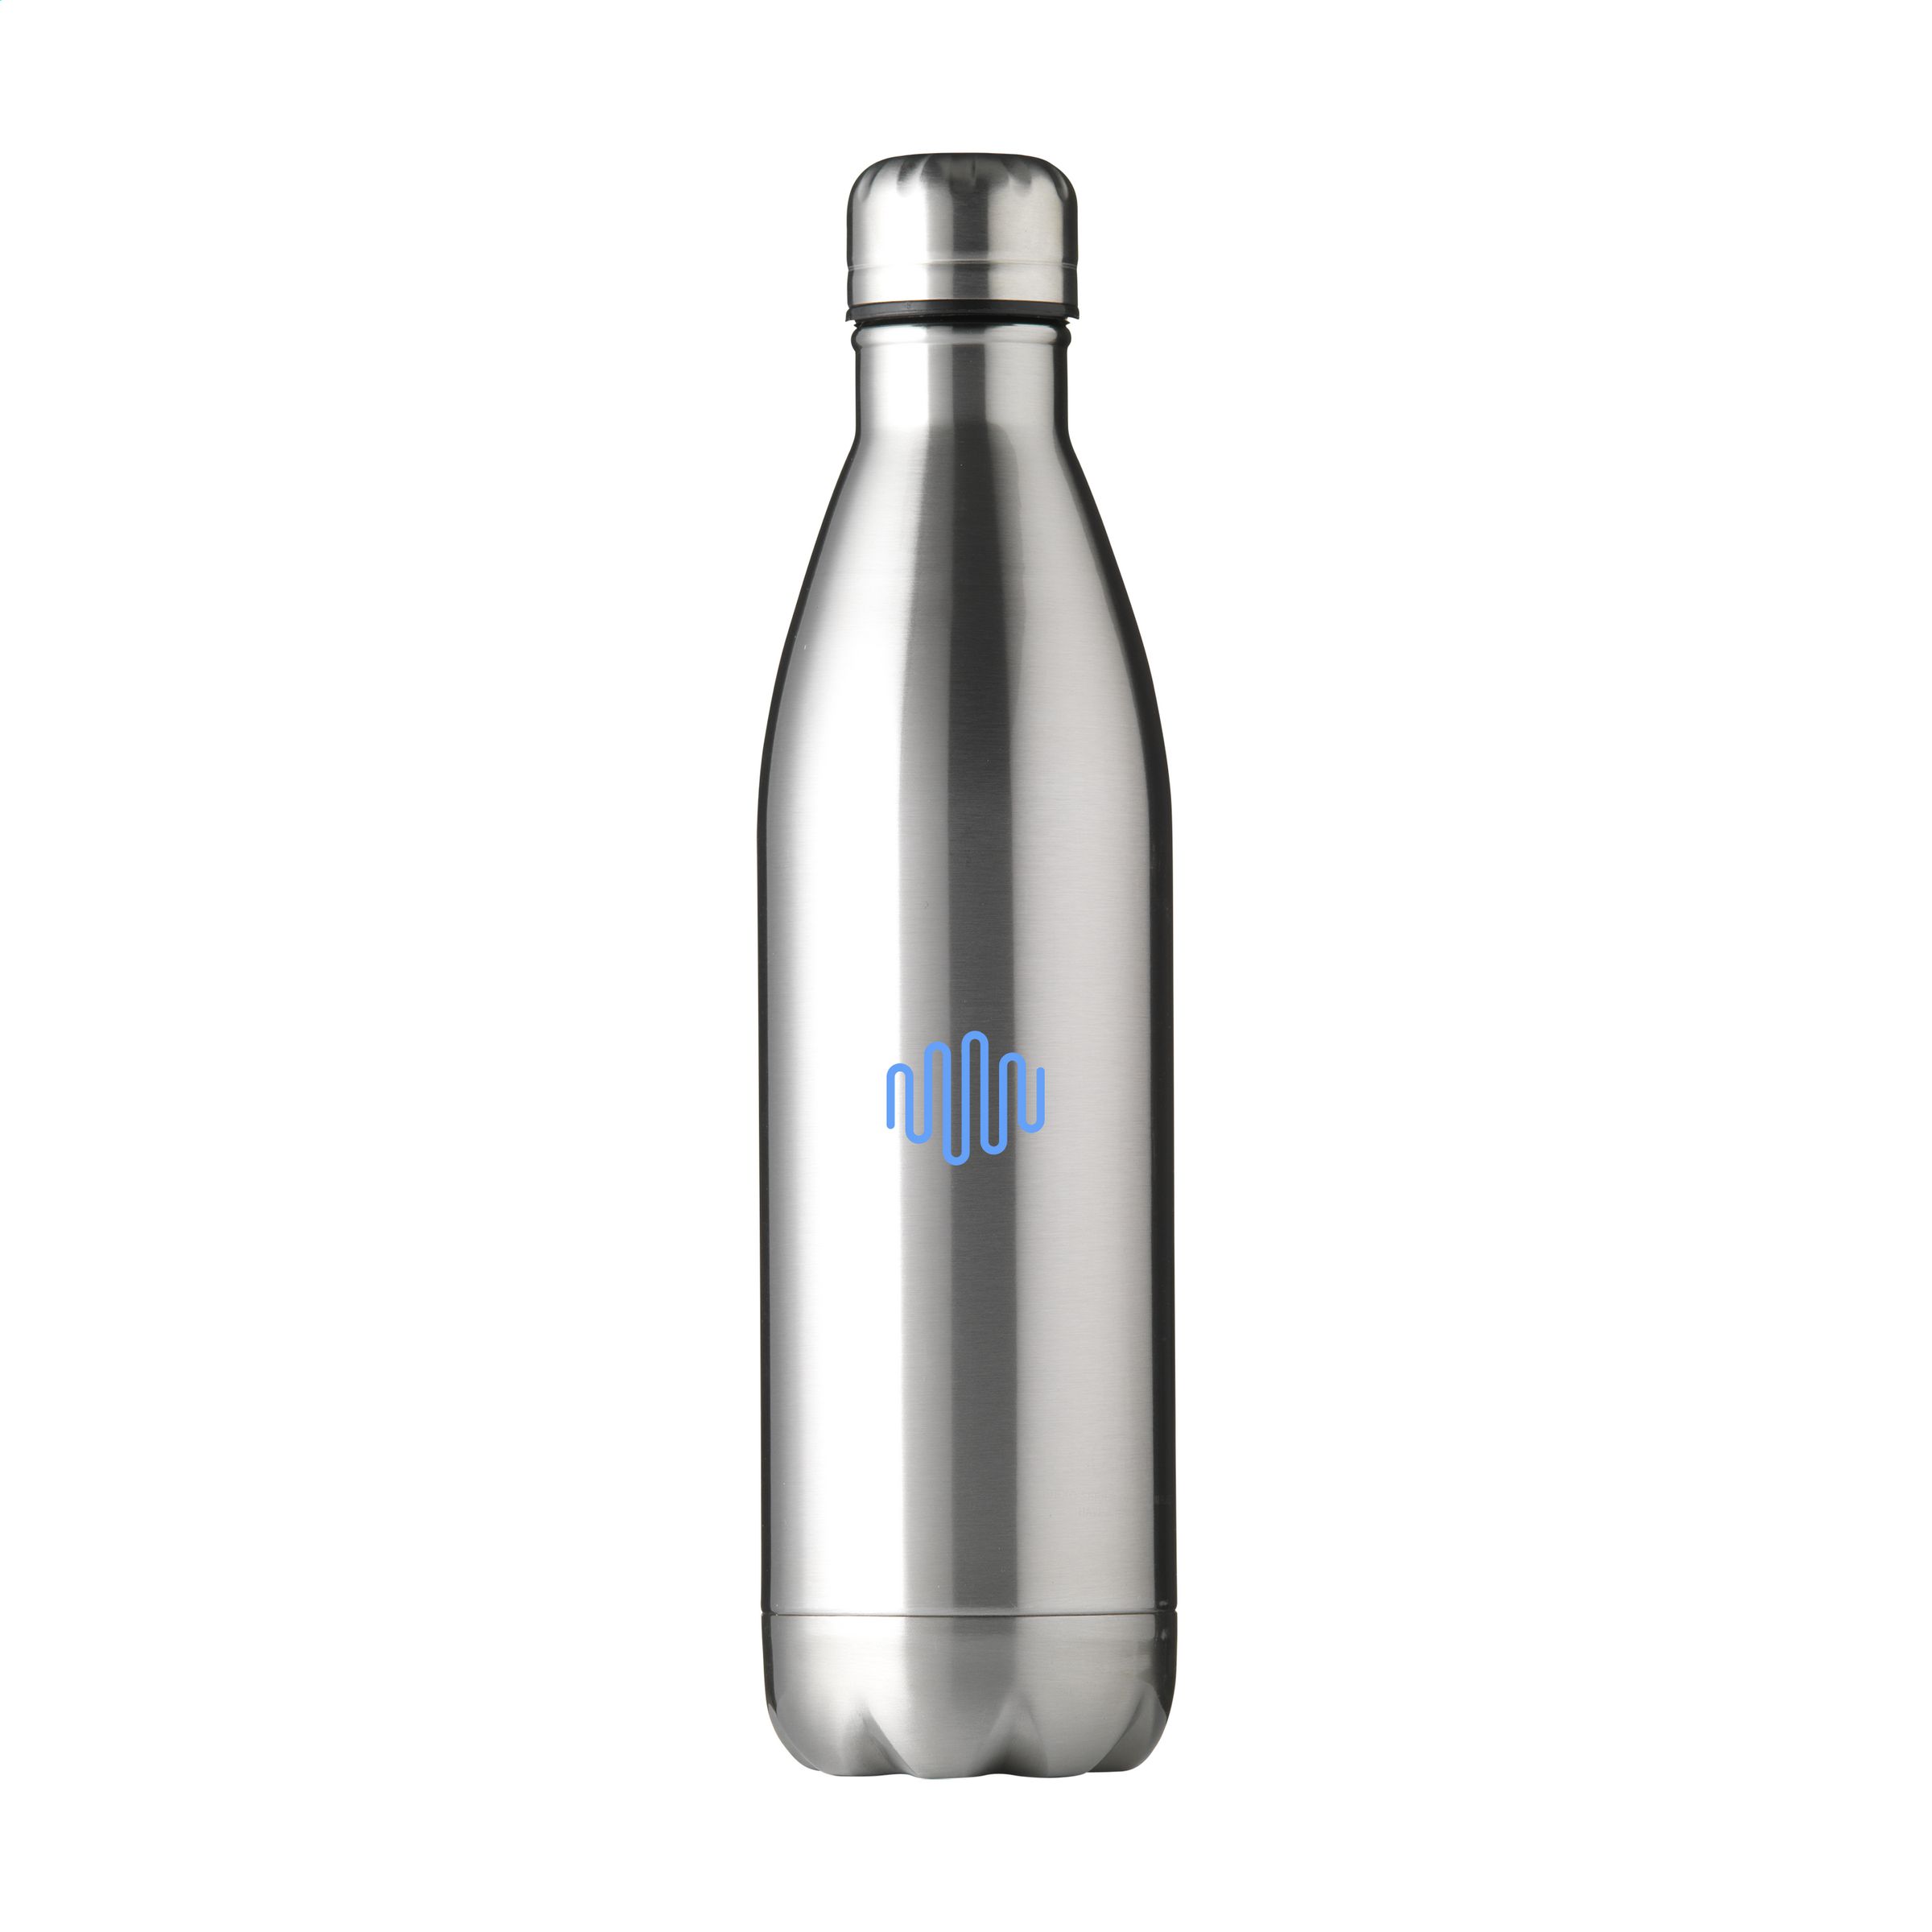 Topflask 750 ml water bottle